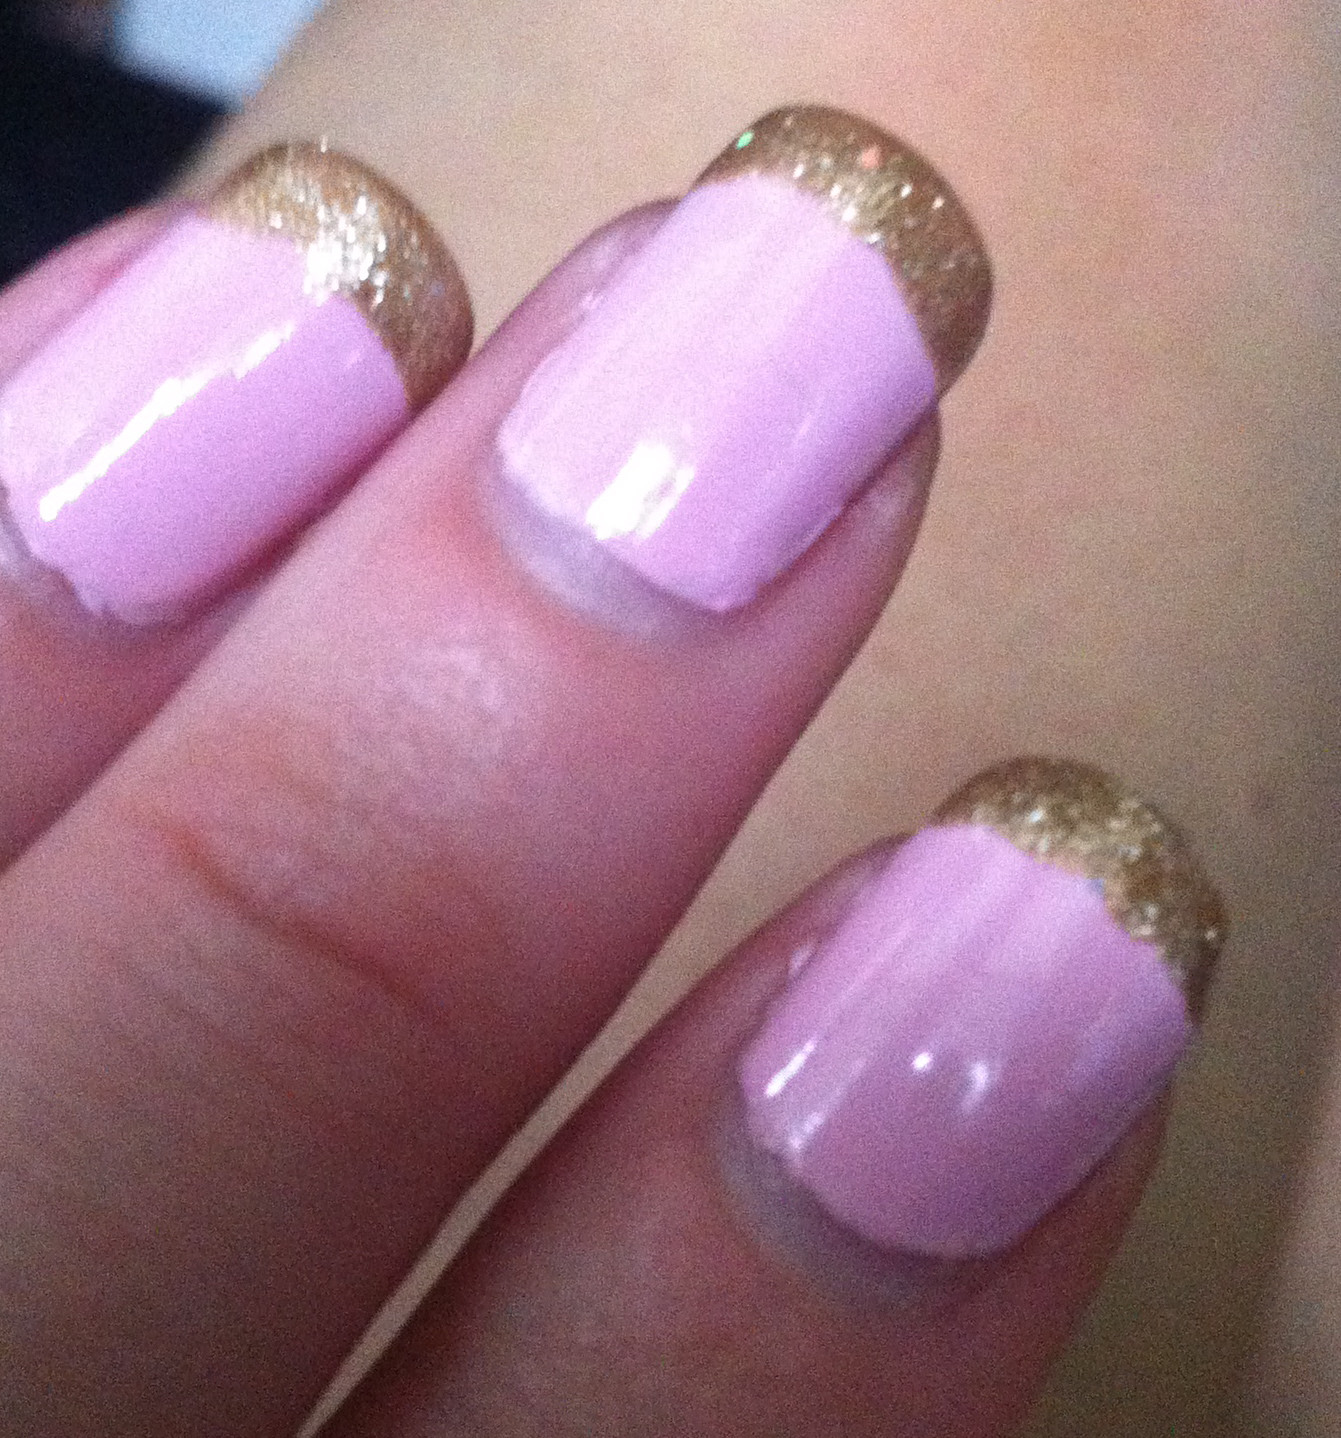 Gold Glitter Tips Nails
 Nenta s Frivolity Baby Pink Nails with Gold Glitter Tips